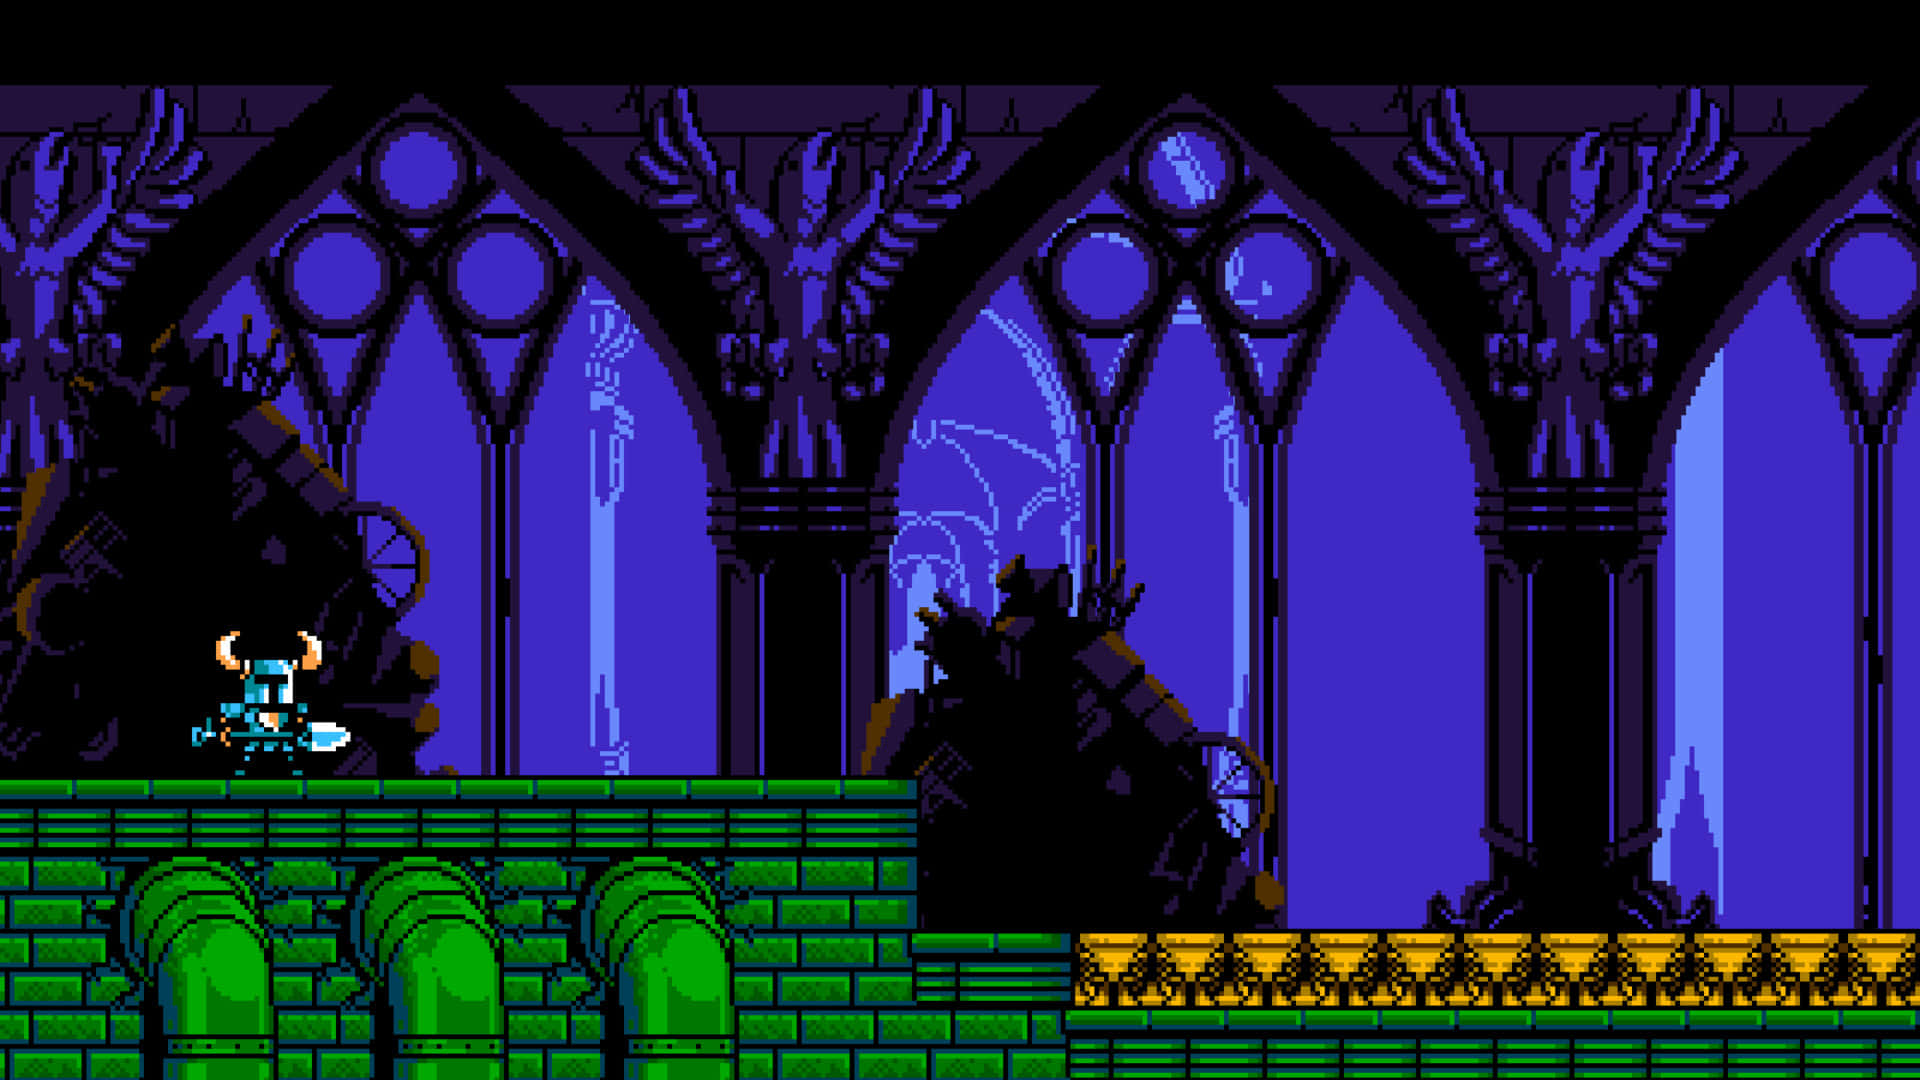 Einscreenshot Eines Videospiels Mit Einem Schloss Im Hintergrund